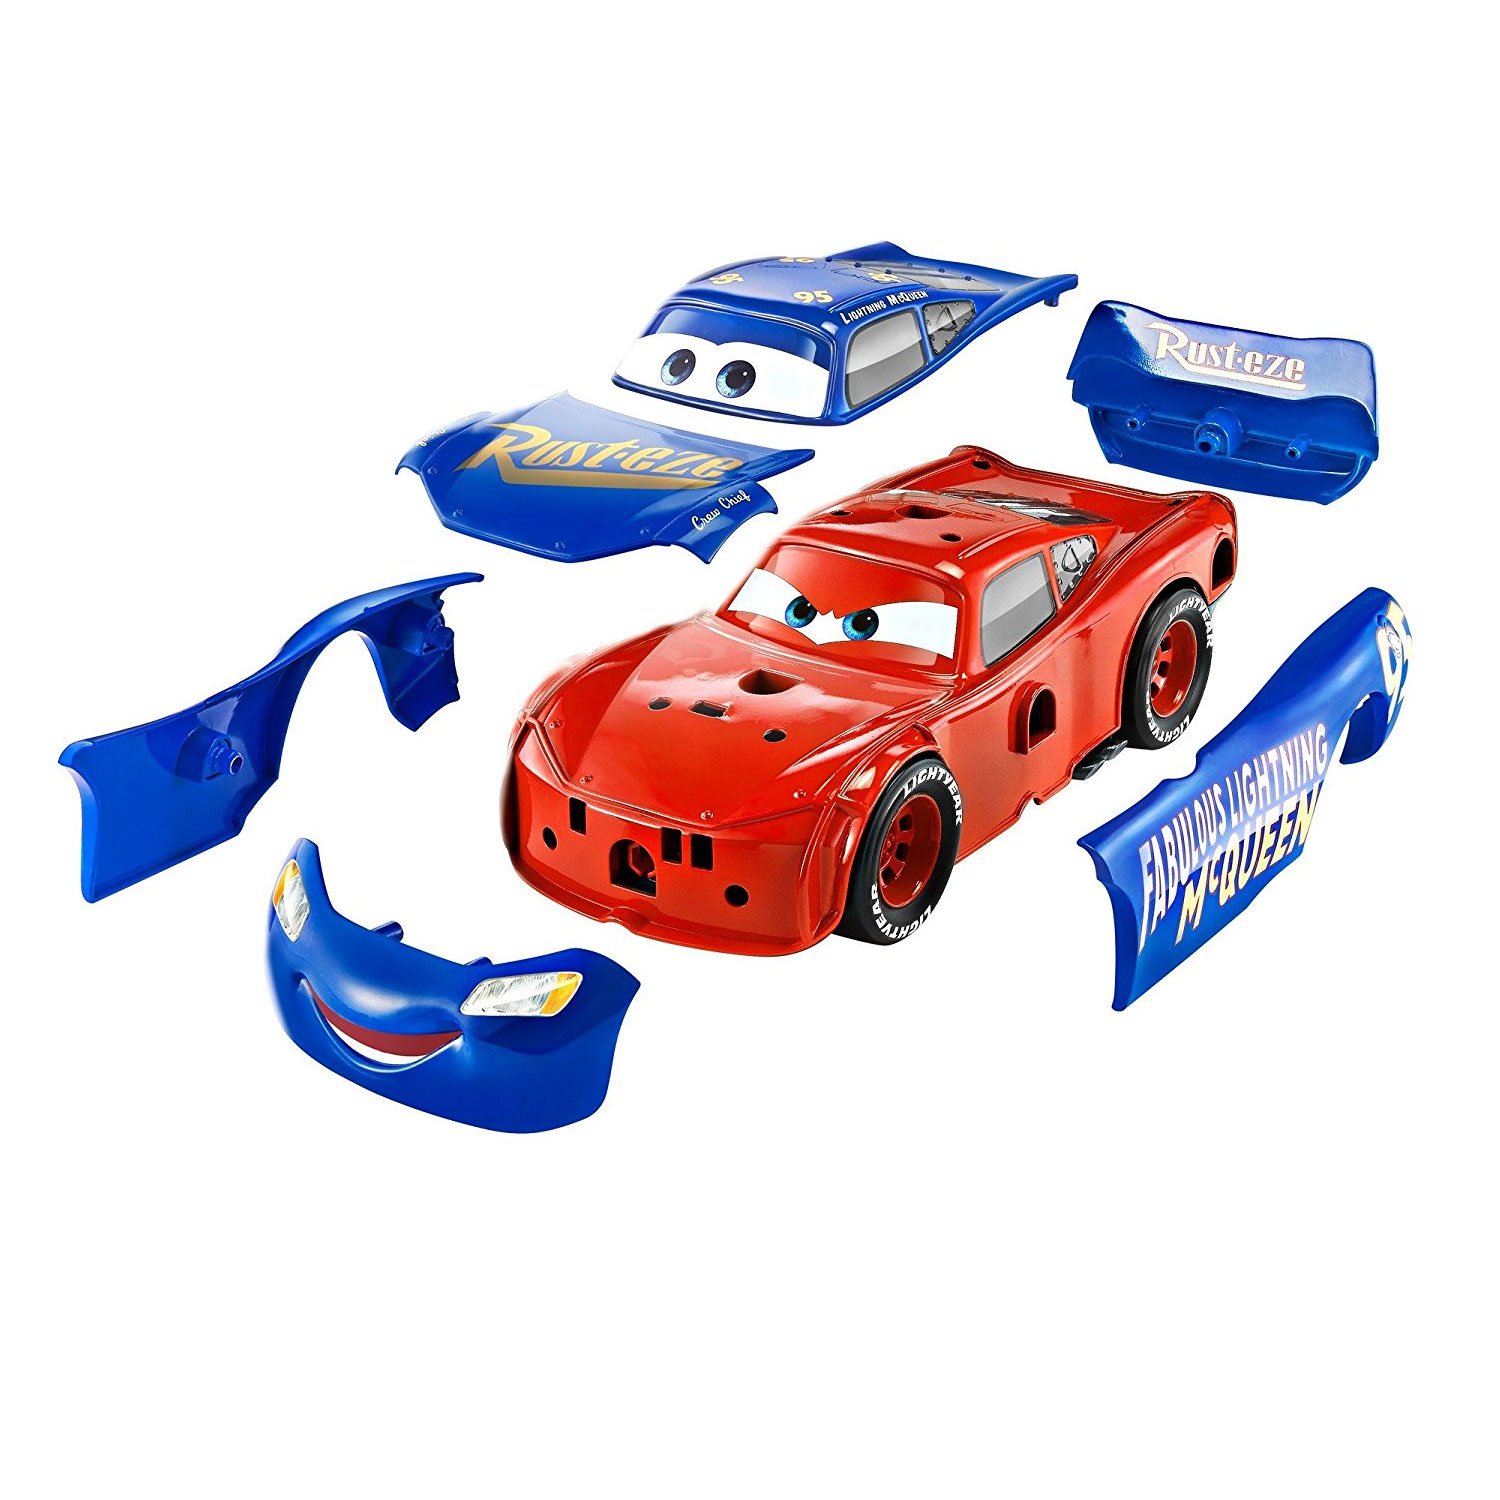 Voiture 3 en 1 Cars 3 Flash McQueen - Jeux et jouets Mattel